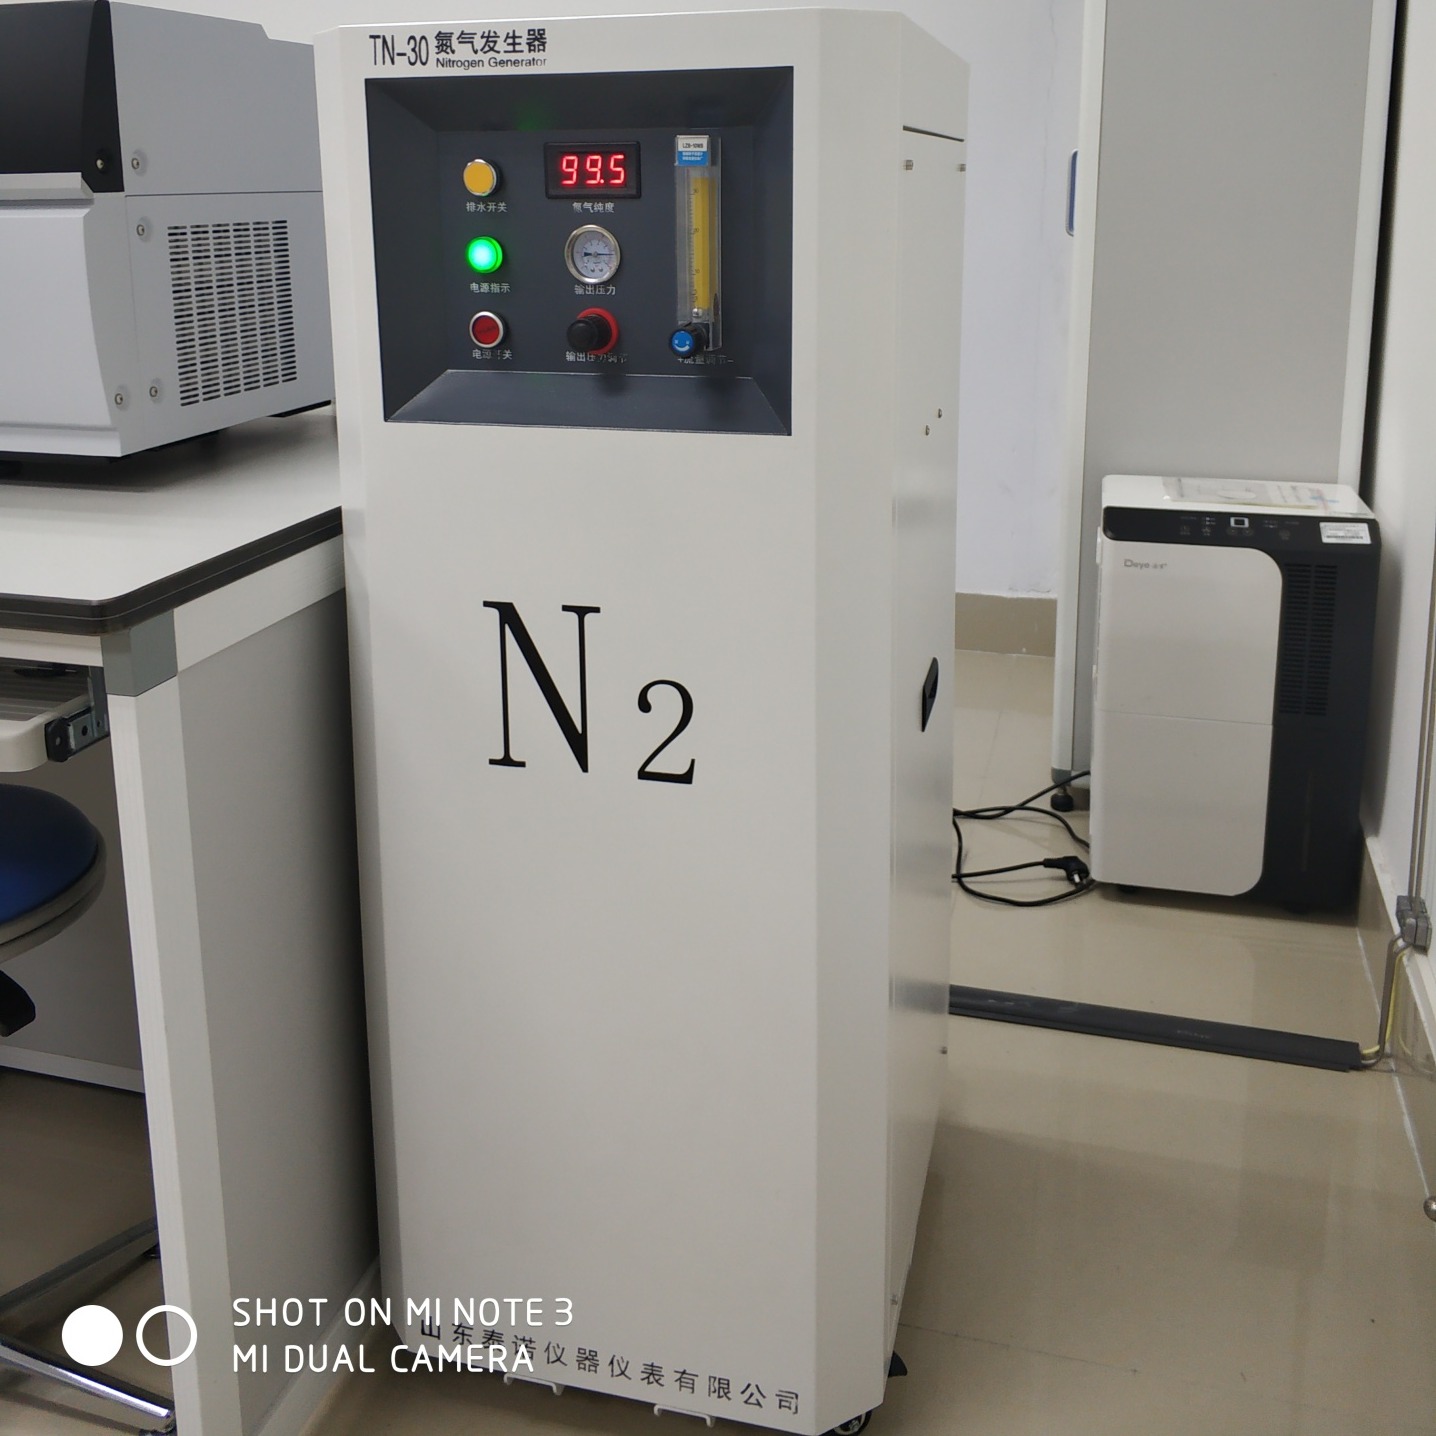 大流量专用 氮气发生器 实验室用氮气发生器 泰诺 液质专用氮气发生器 TN-40LN